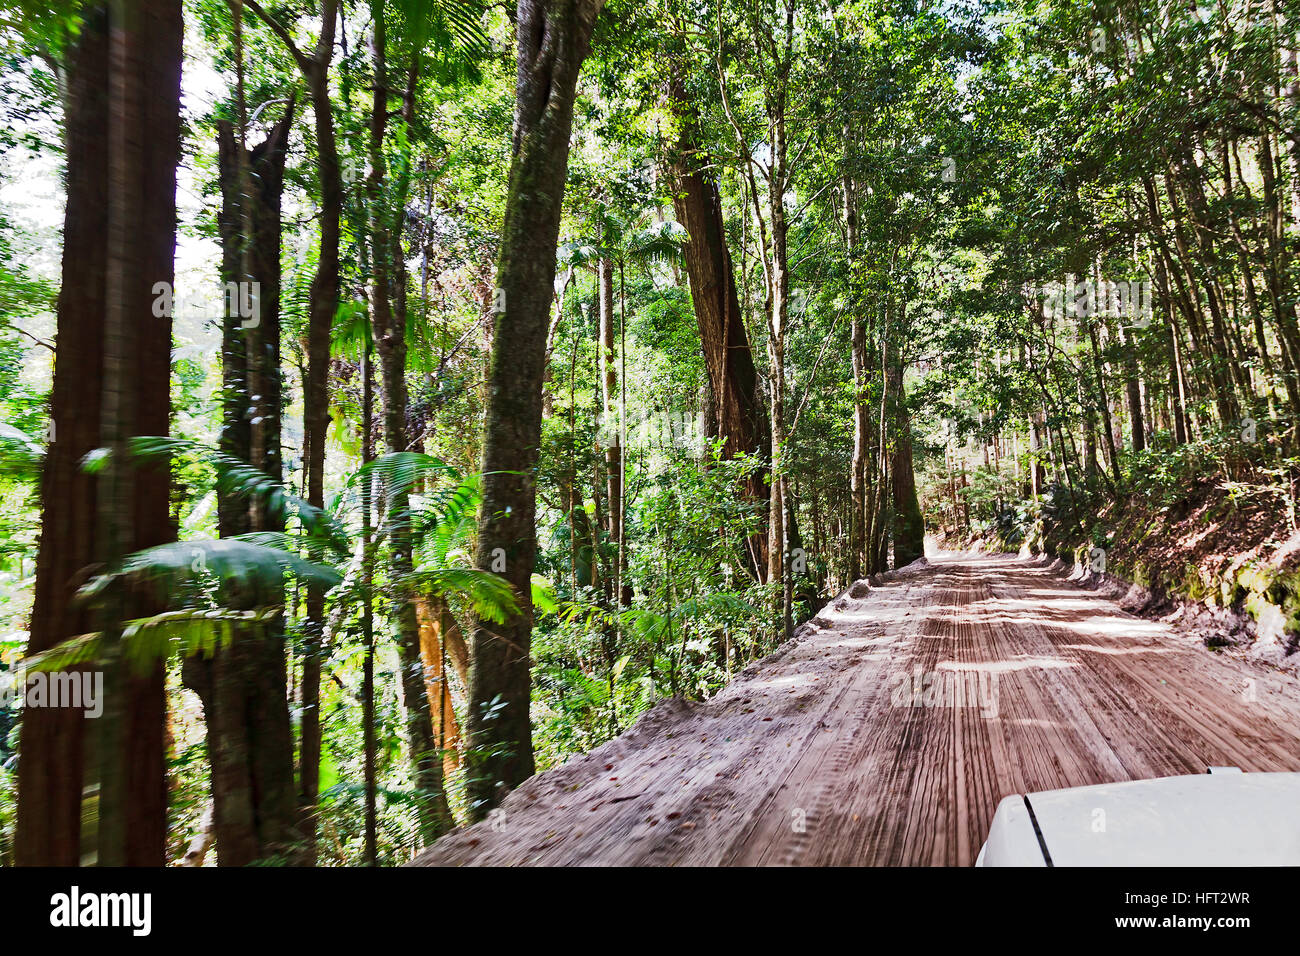 Australische Fraser Island Regenwald sandige Straße vom Fahrzeug mit Geschwindigkeit bewegen, wenn hohe Gum dicht um den Trail Bäumen. Stockfoto